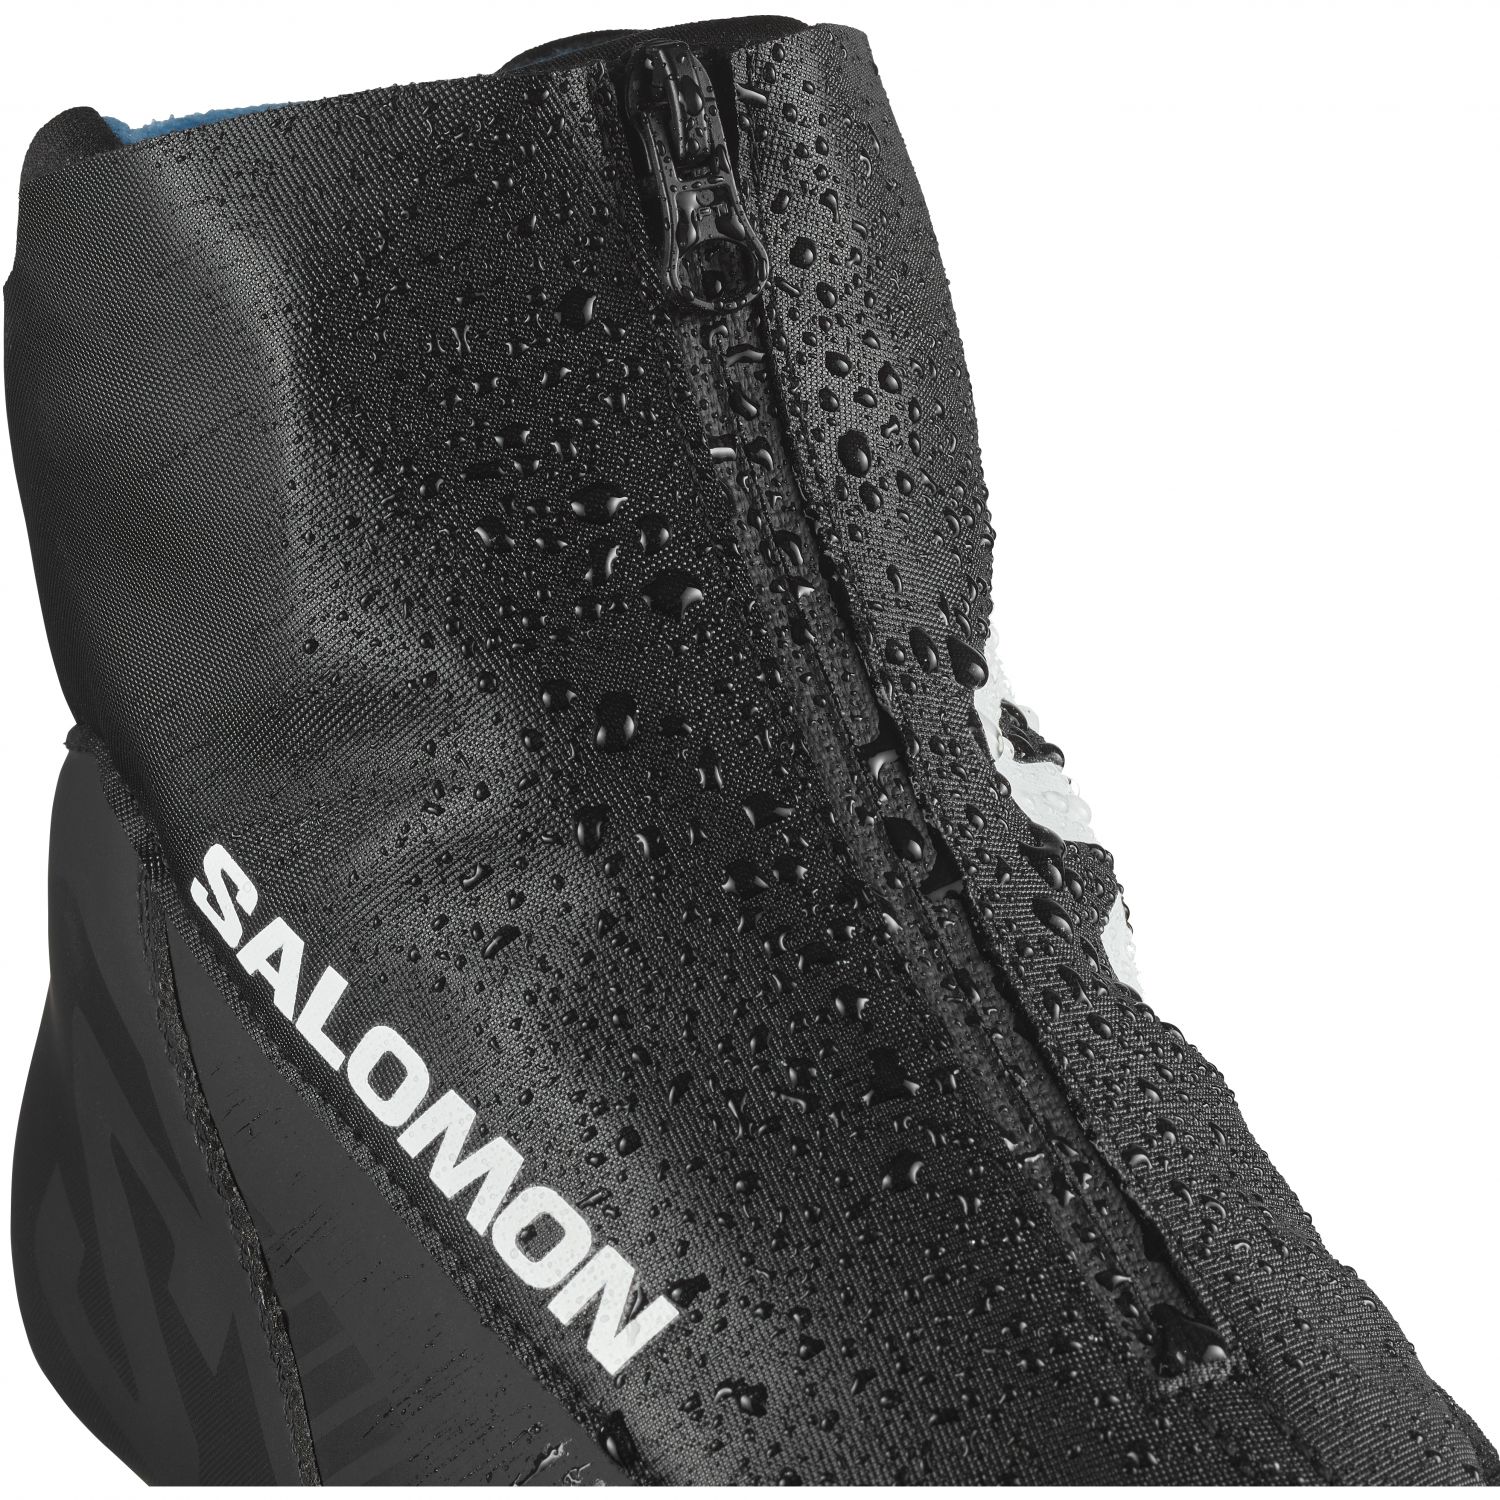 Salomon Escape RC Prolink, chaussures de ski de fond, noir